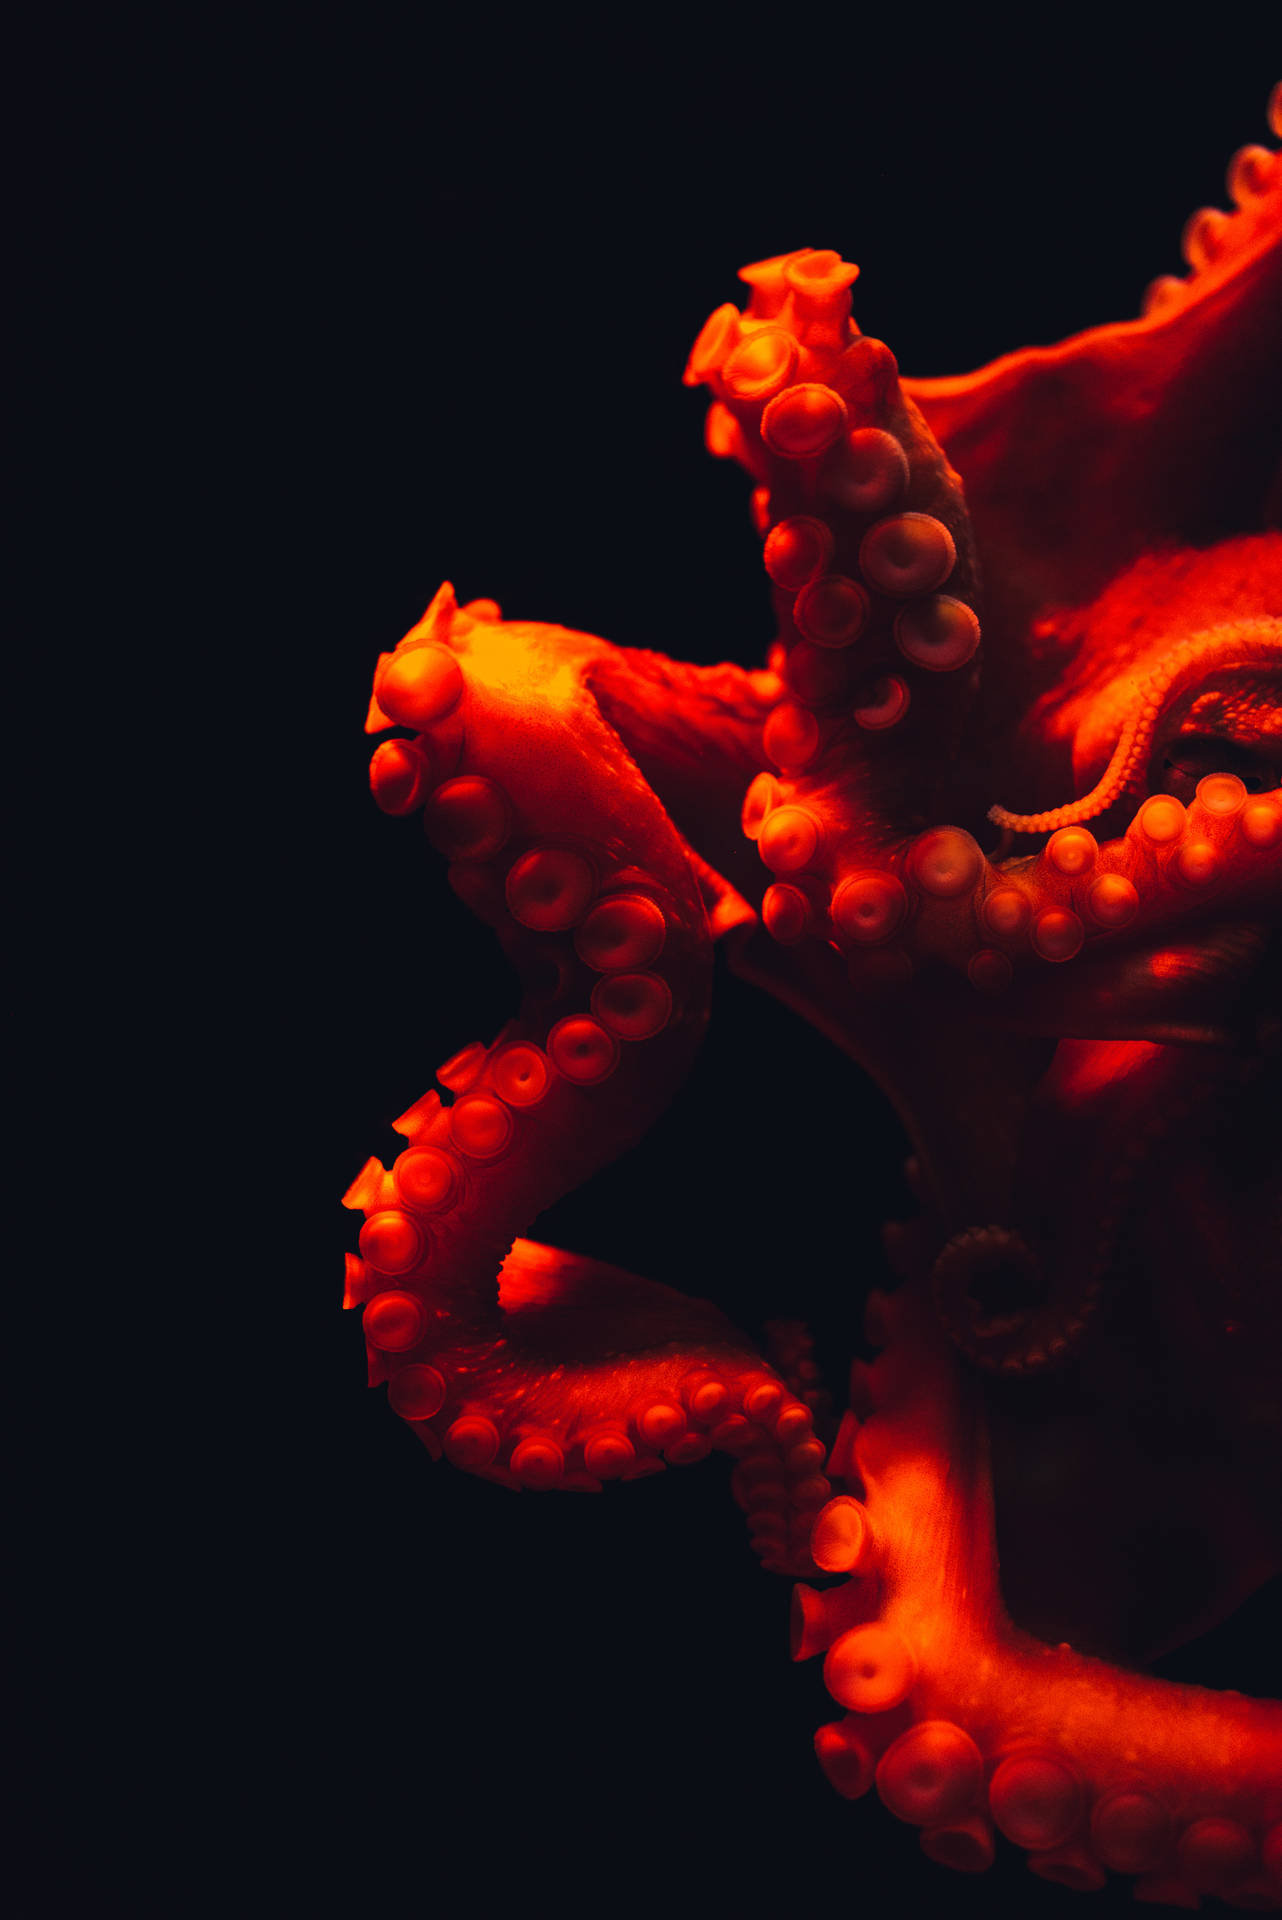 Underwater Red Octopus Wallpaper